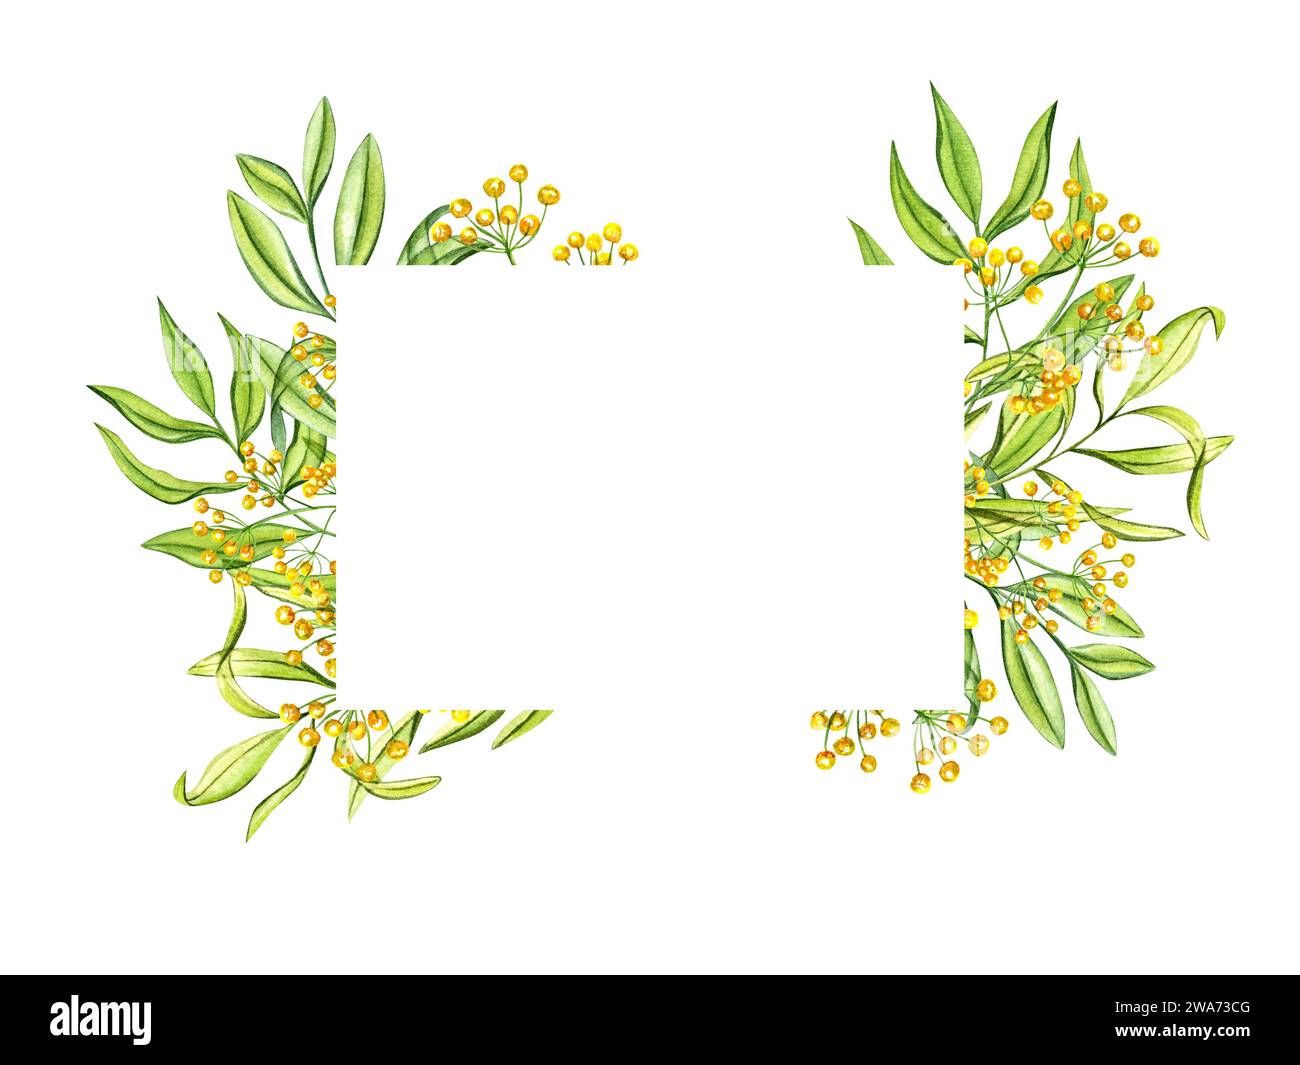 Horizontaler Rahmen mit grünen Blättern und gelben Blüten. Wilde Frühlingskräuter. Kopierbereich für Text. Aquarellabbildung. Zur Begrüßung, Einladung Stockfoto